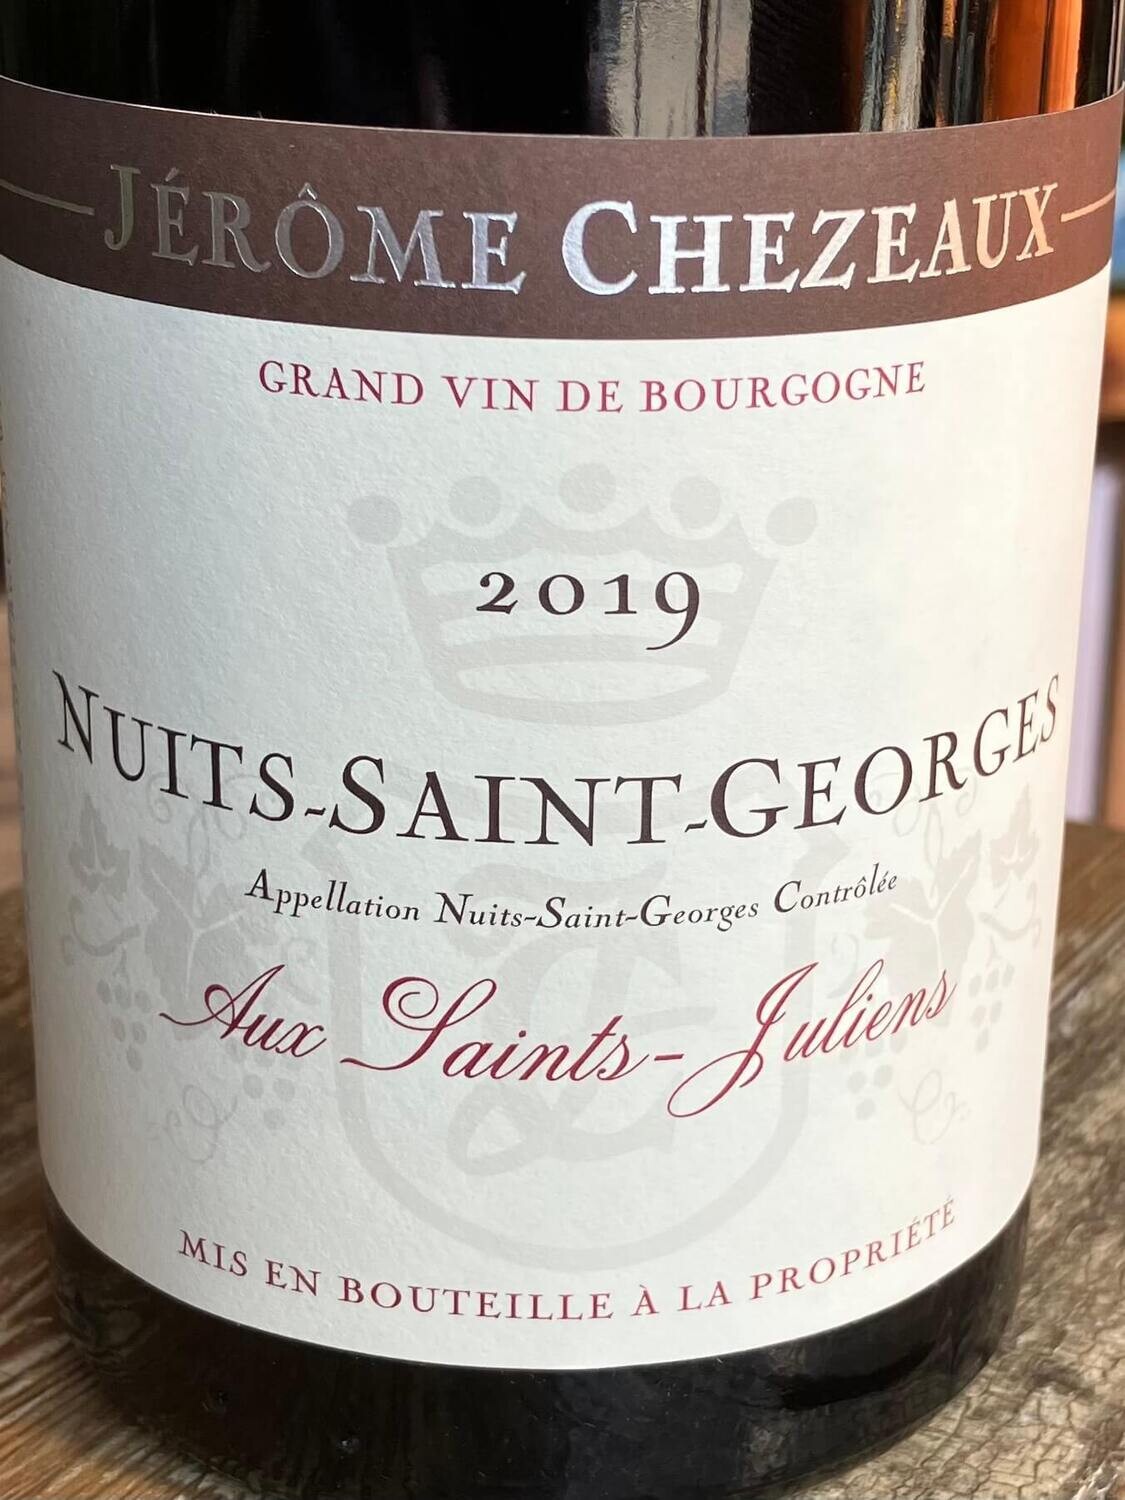 2019 Jerome Chezeaux Nuits-Saint-Georges Aux Saints-Juliens